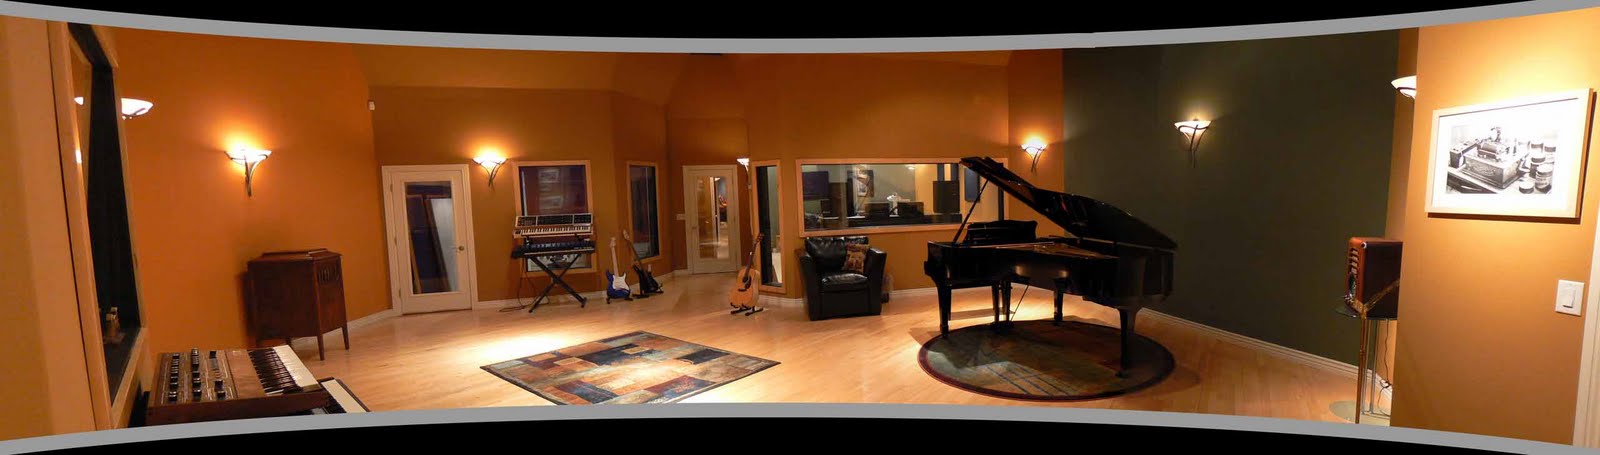 argosy recording studio furniture